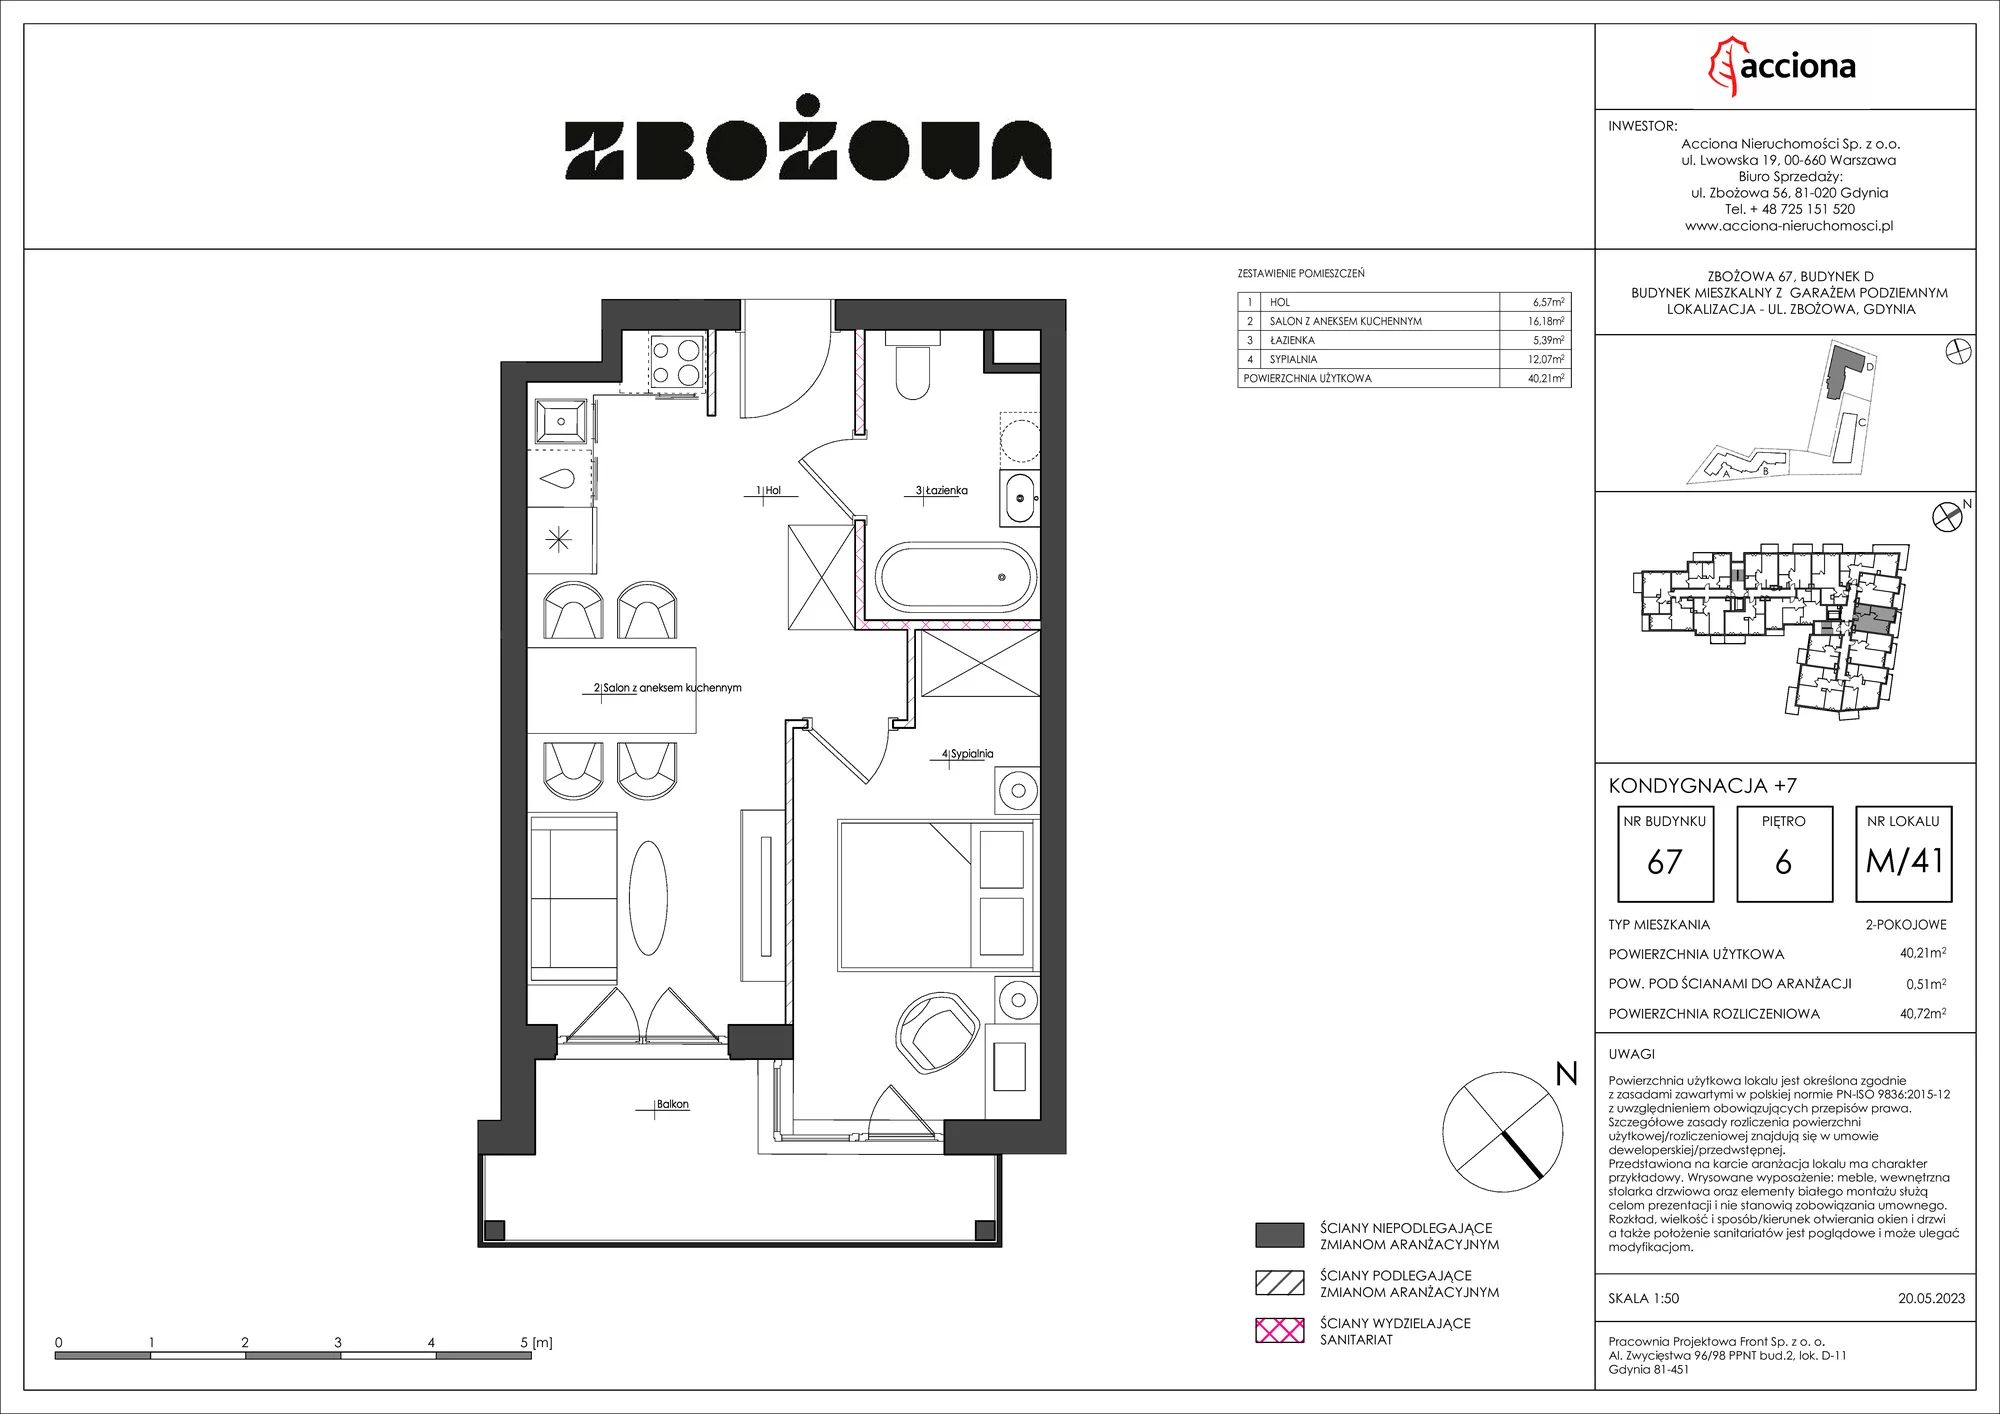 Mieszkanie 40,72 m², piętro 6, oferta nr 67.41, Zbożowa, Gdynia, Cisowa, ul. Zbożowa